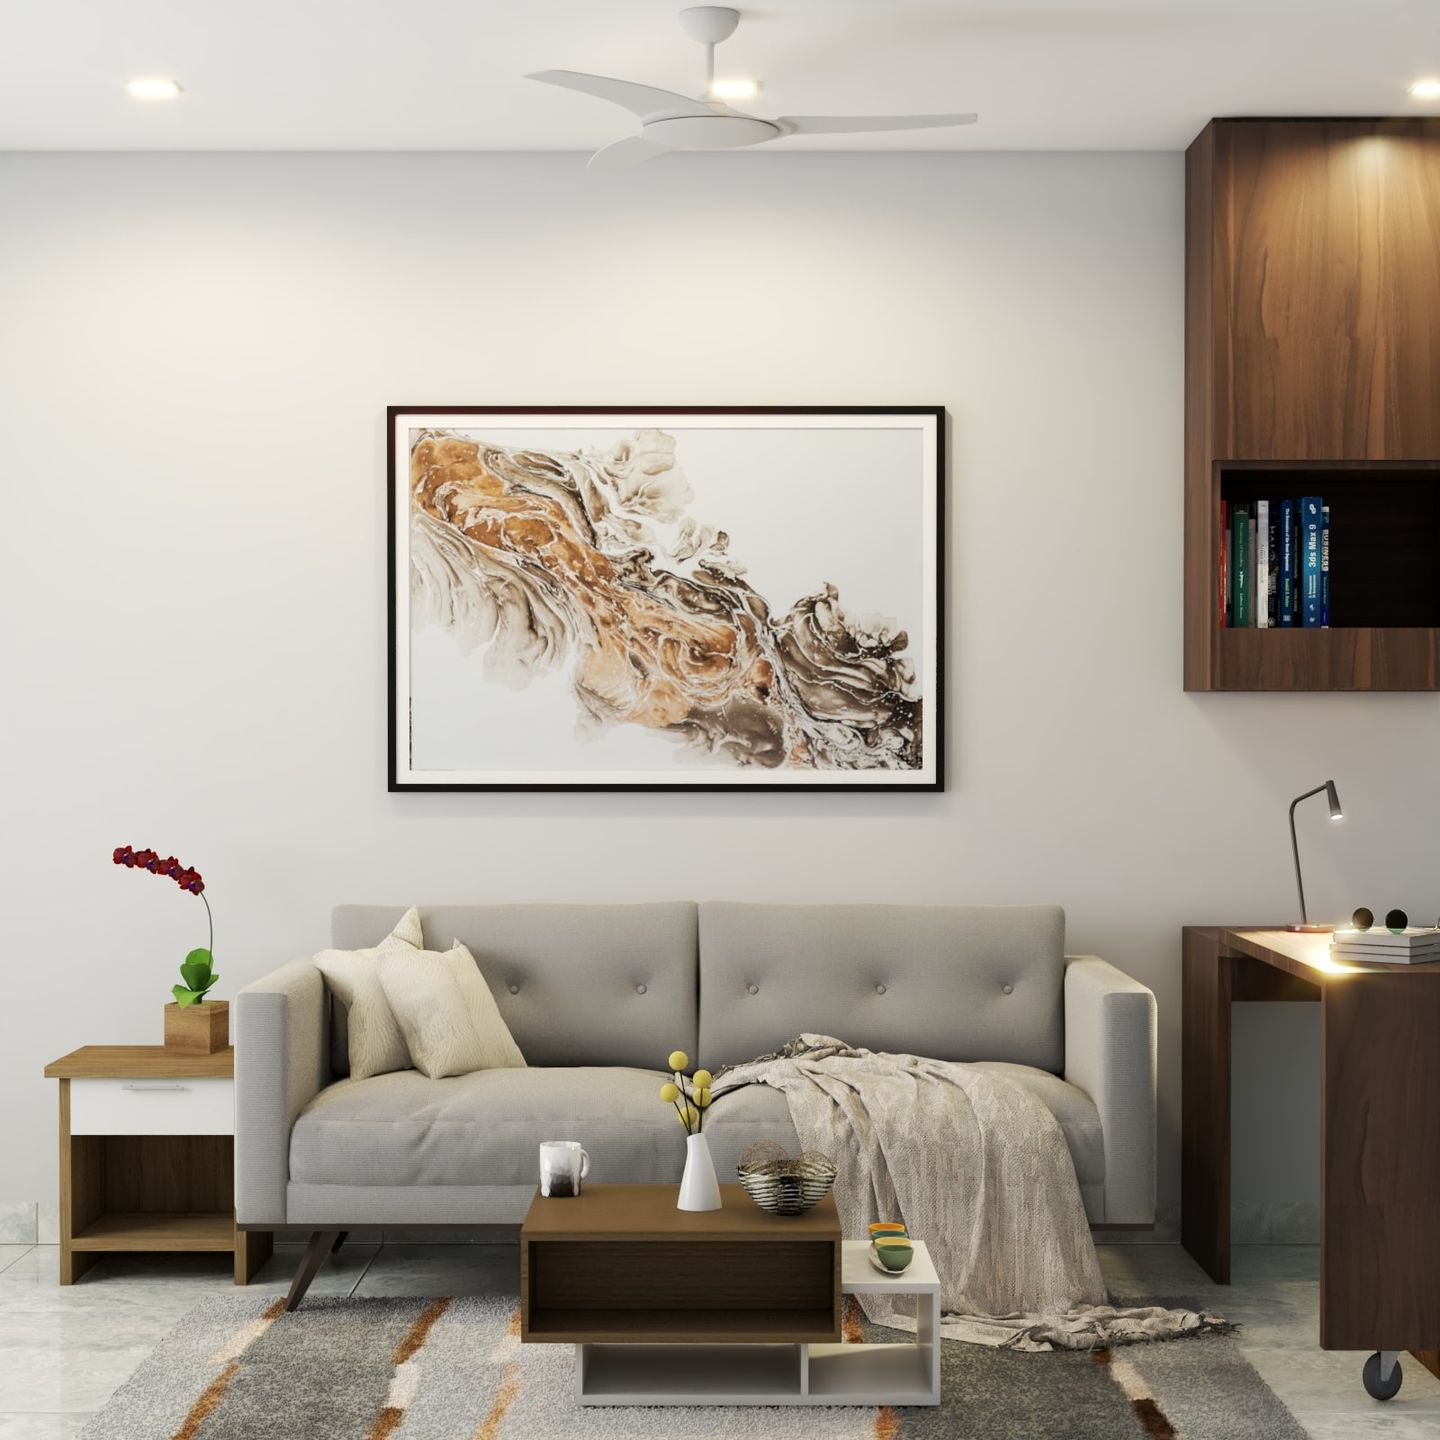 Premium Living Room Design - Livspace